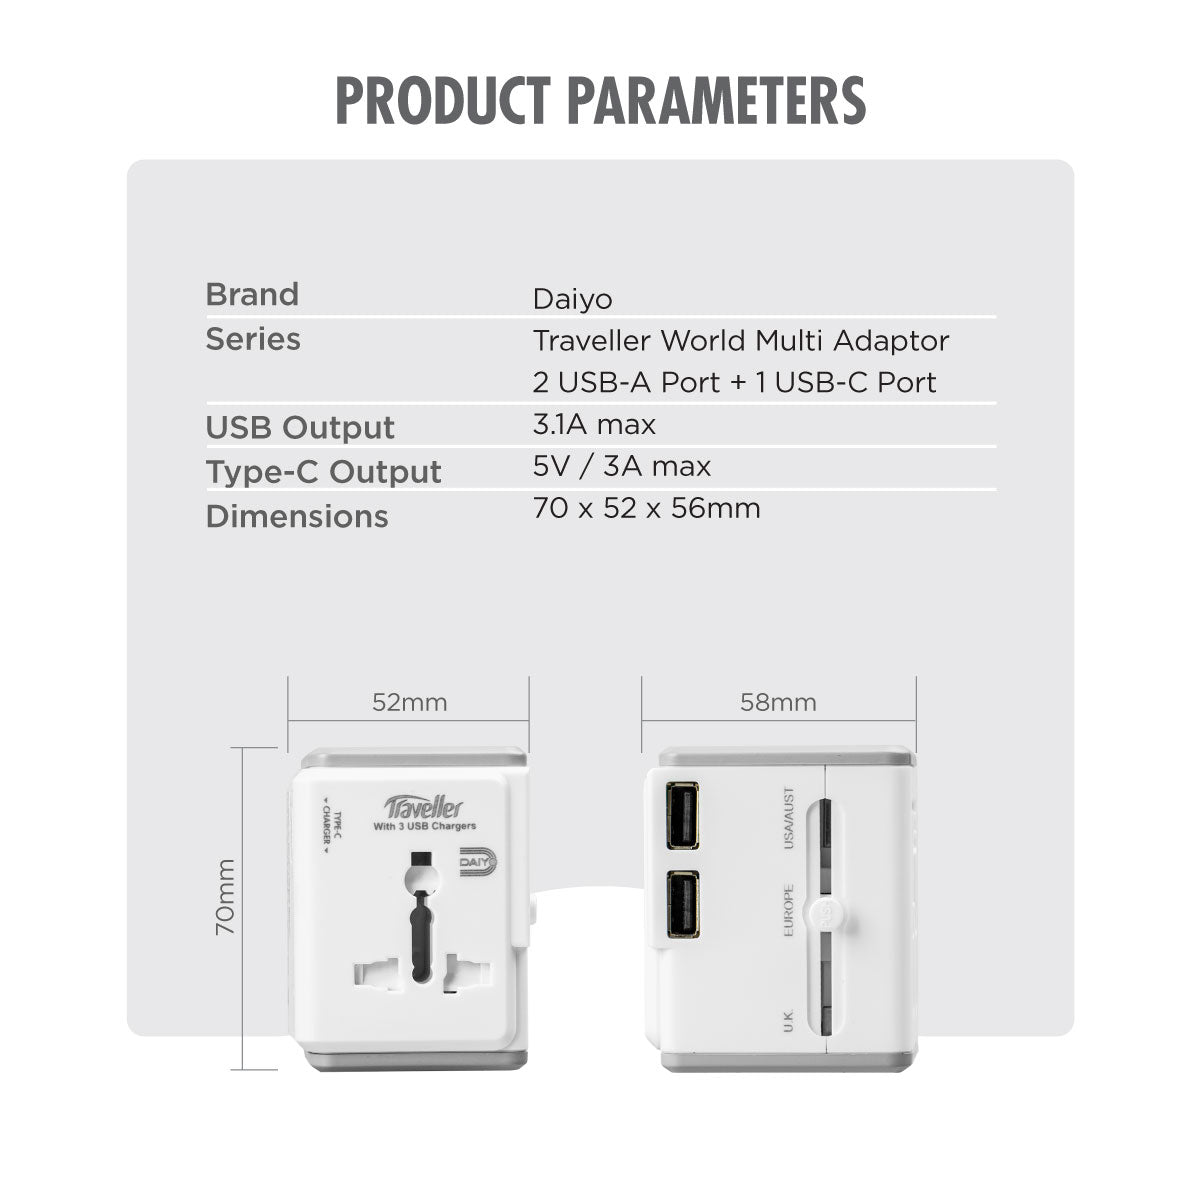 Daiyo DE 318 Travel World Multi Adaptor 3.1A,  2 USB-A + 1 USB-C Ports